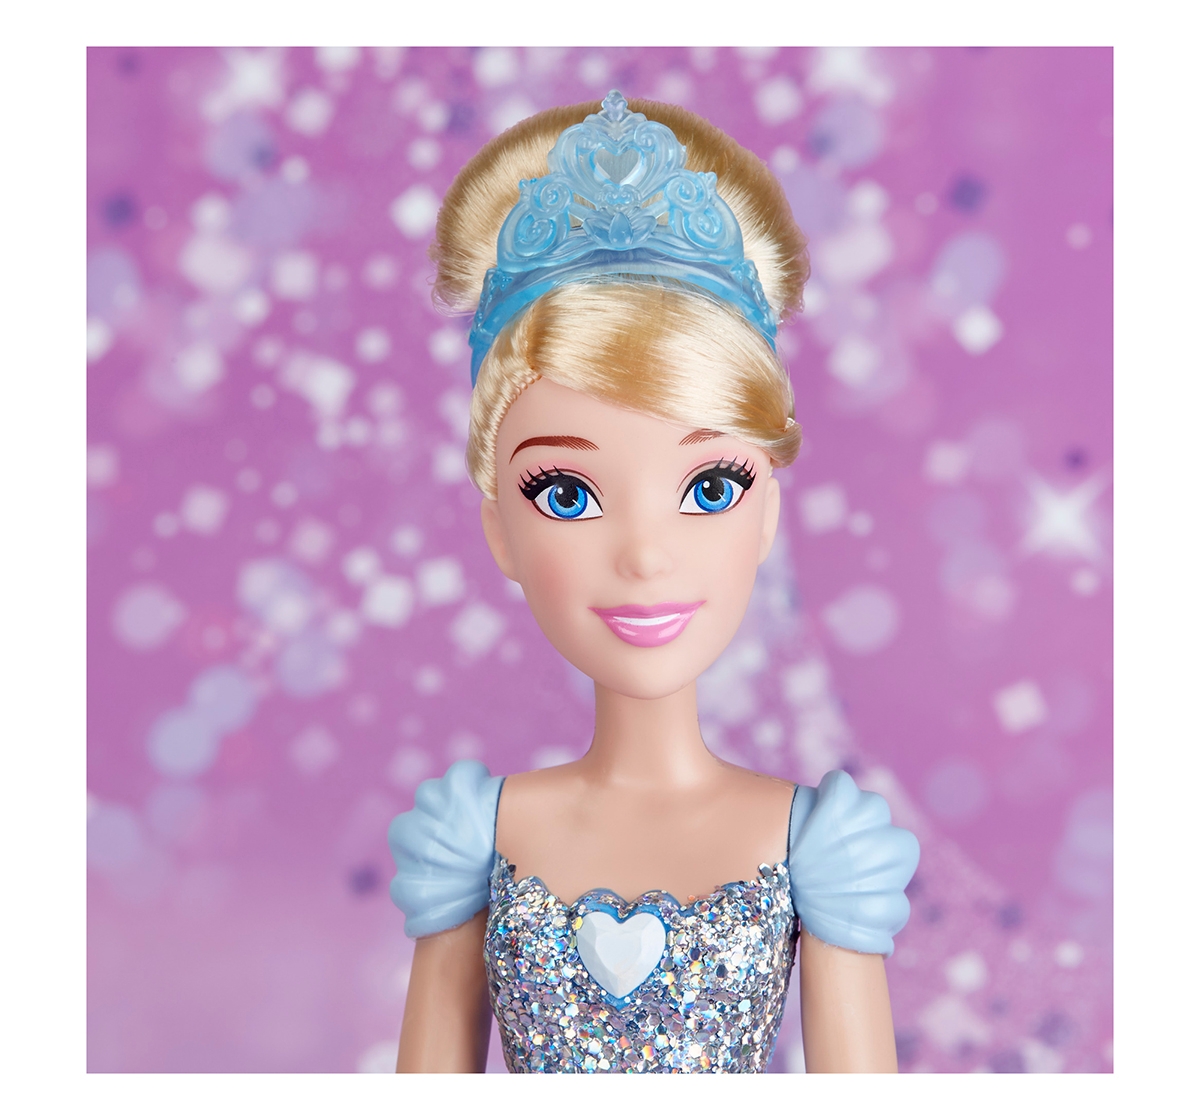 DISNEY | Disney Princess Royal Shimmer Cinderella Dolls & Accessories for Girls age 3Y+ 5